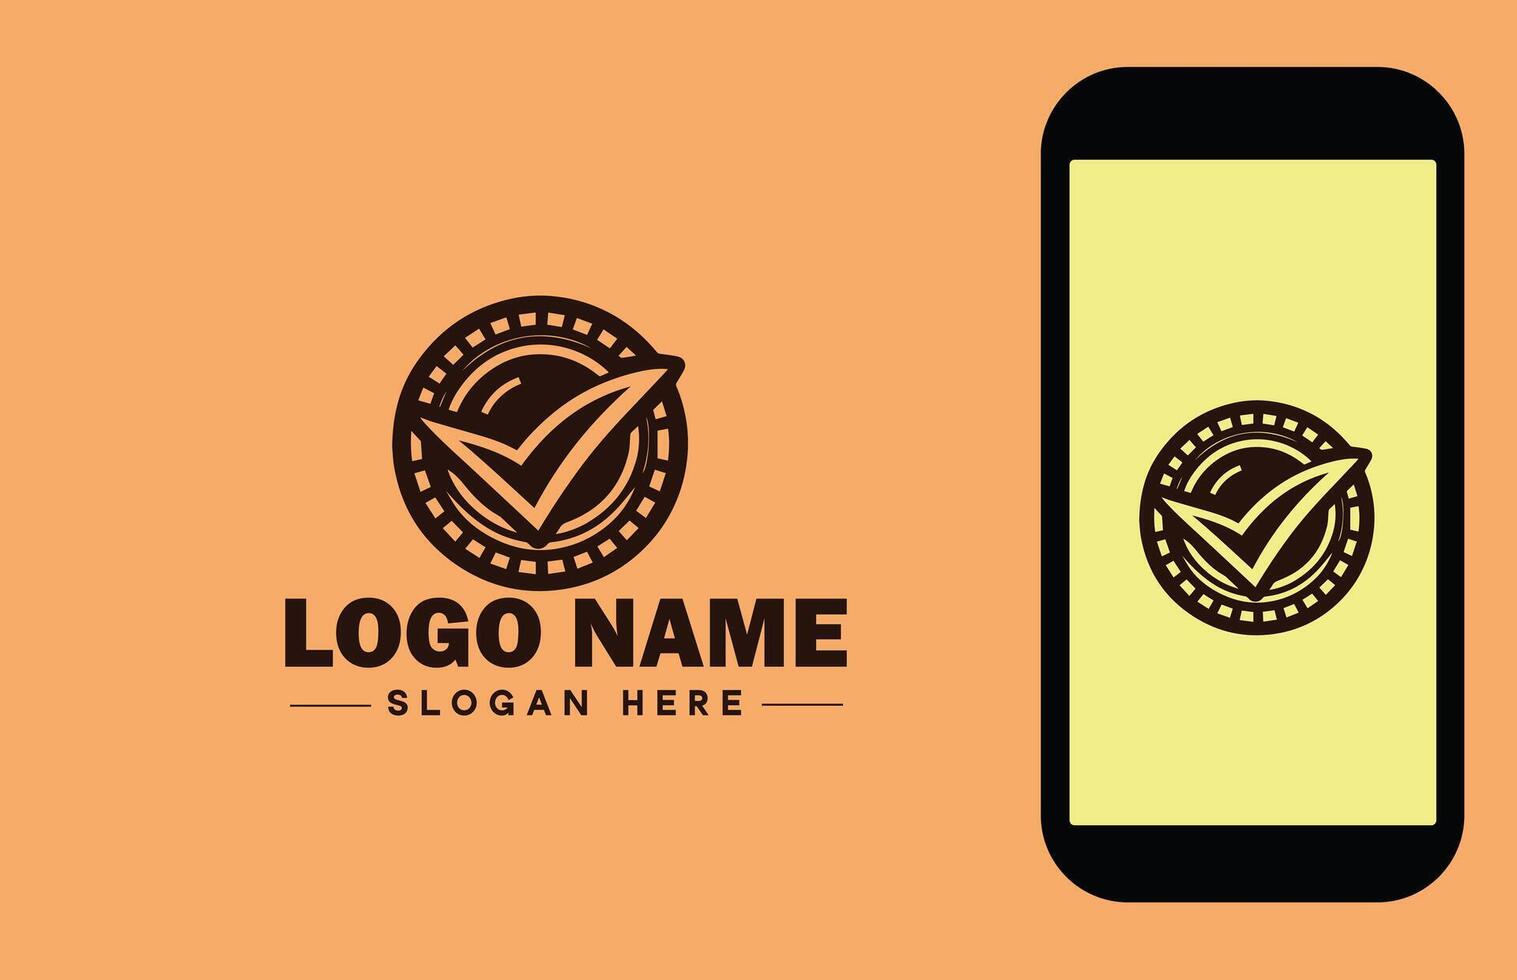 Häkchen Logo Symbol Vektor Kunst Grafik zum Geschäft Marke App Symbol prüfen Kennzeichen richtig Symbol Tick in Ordnung richtig Logo Vorlage